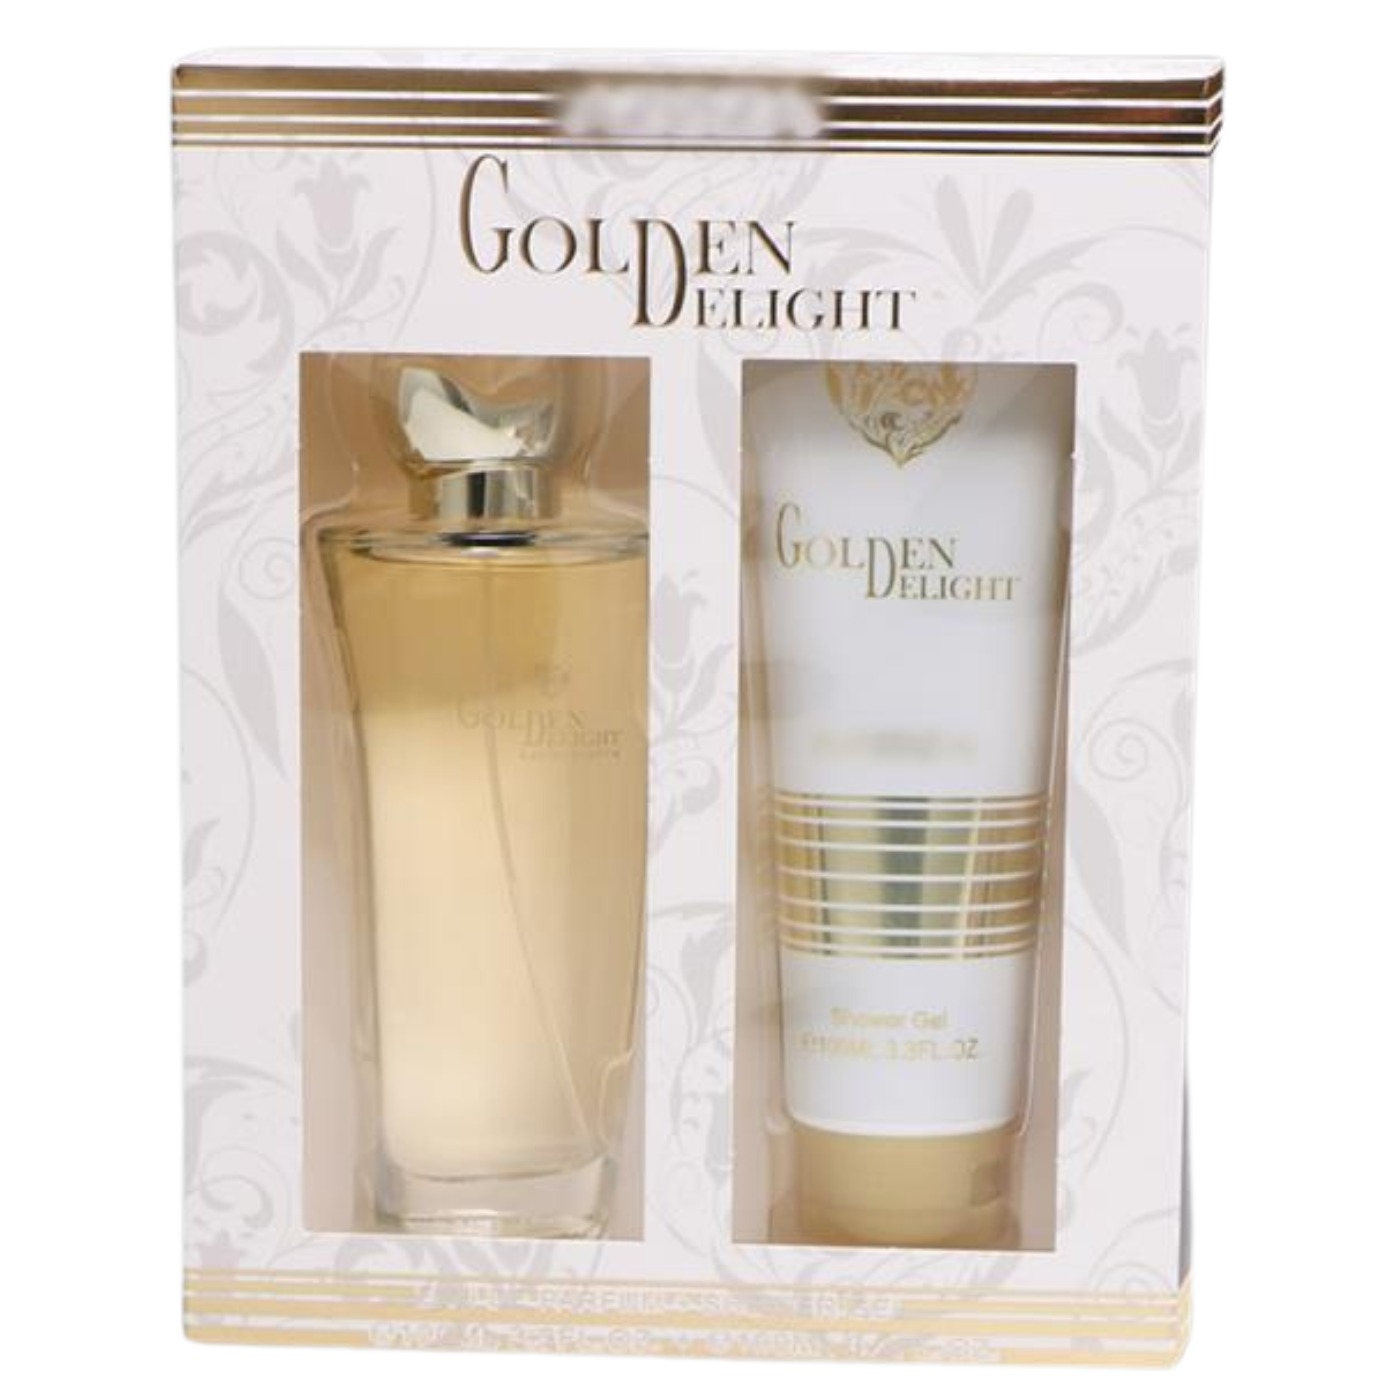 SERPACO Geschenkset Golden Delight Damenparfüm 100 ml + DUSCHGEL 100 ml, Damenduft, Frauenduft, Parfüm